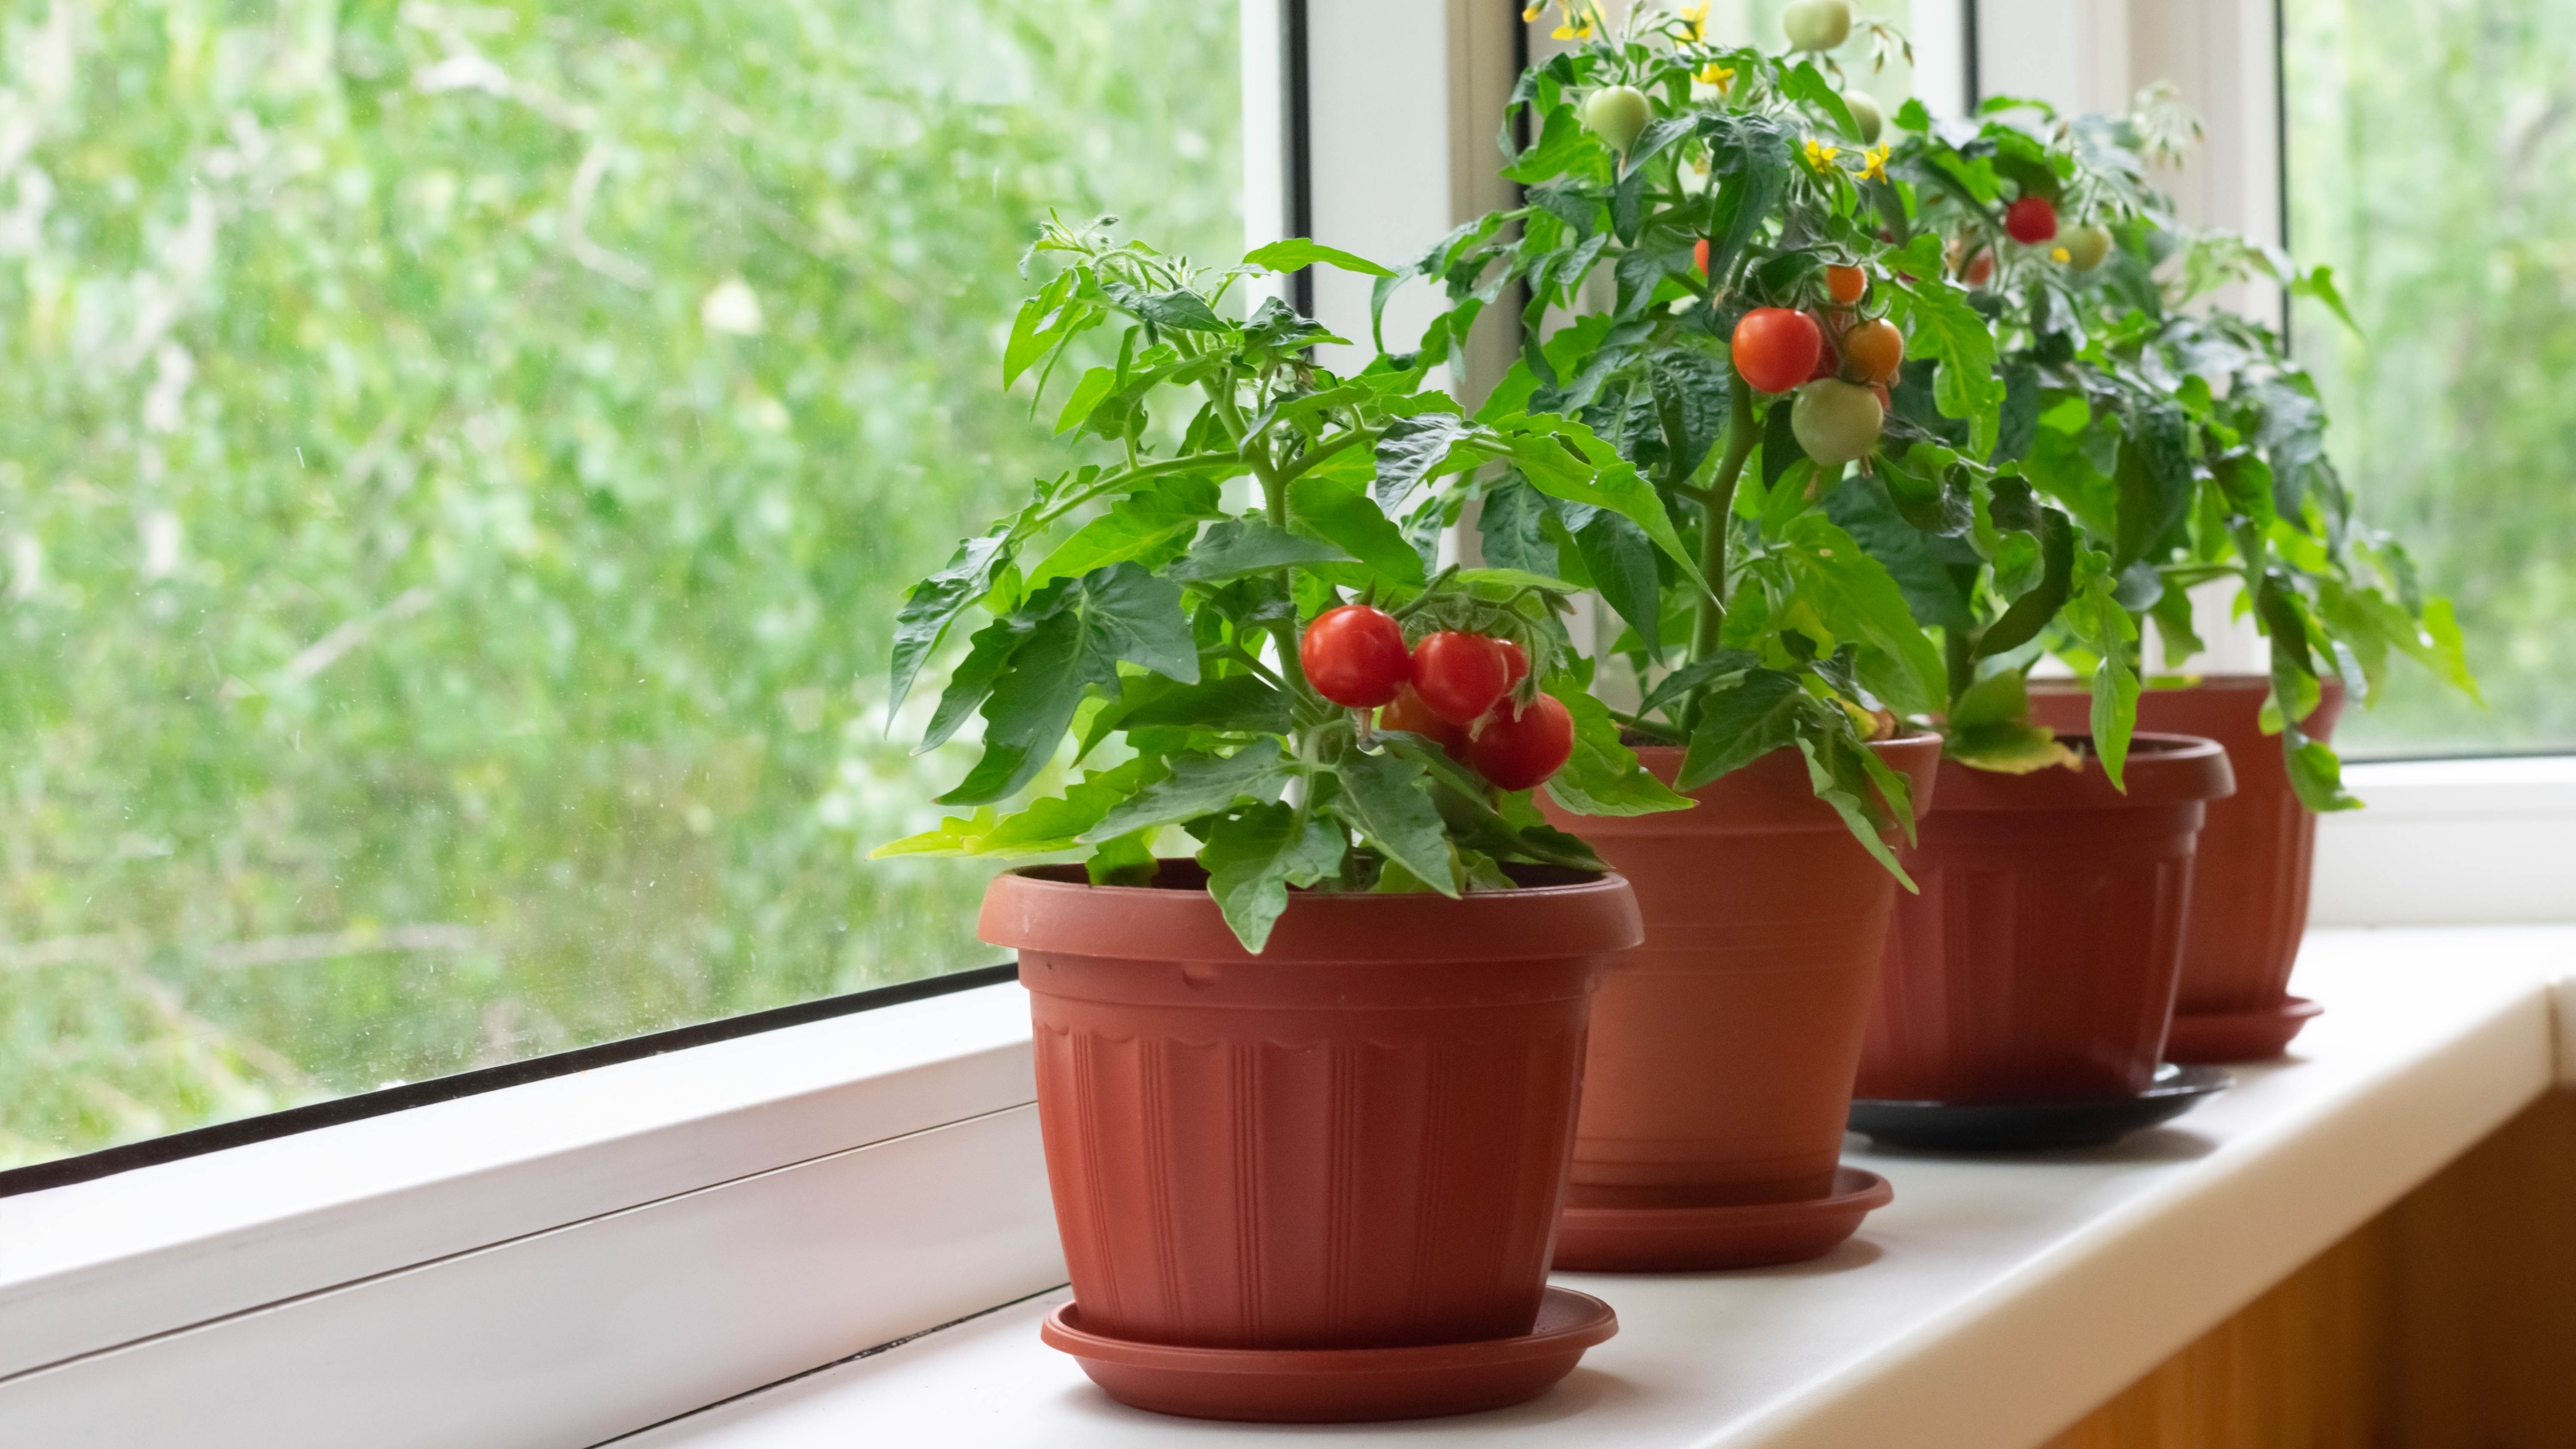 Четыре растения томатов в горшках на подоконнике